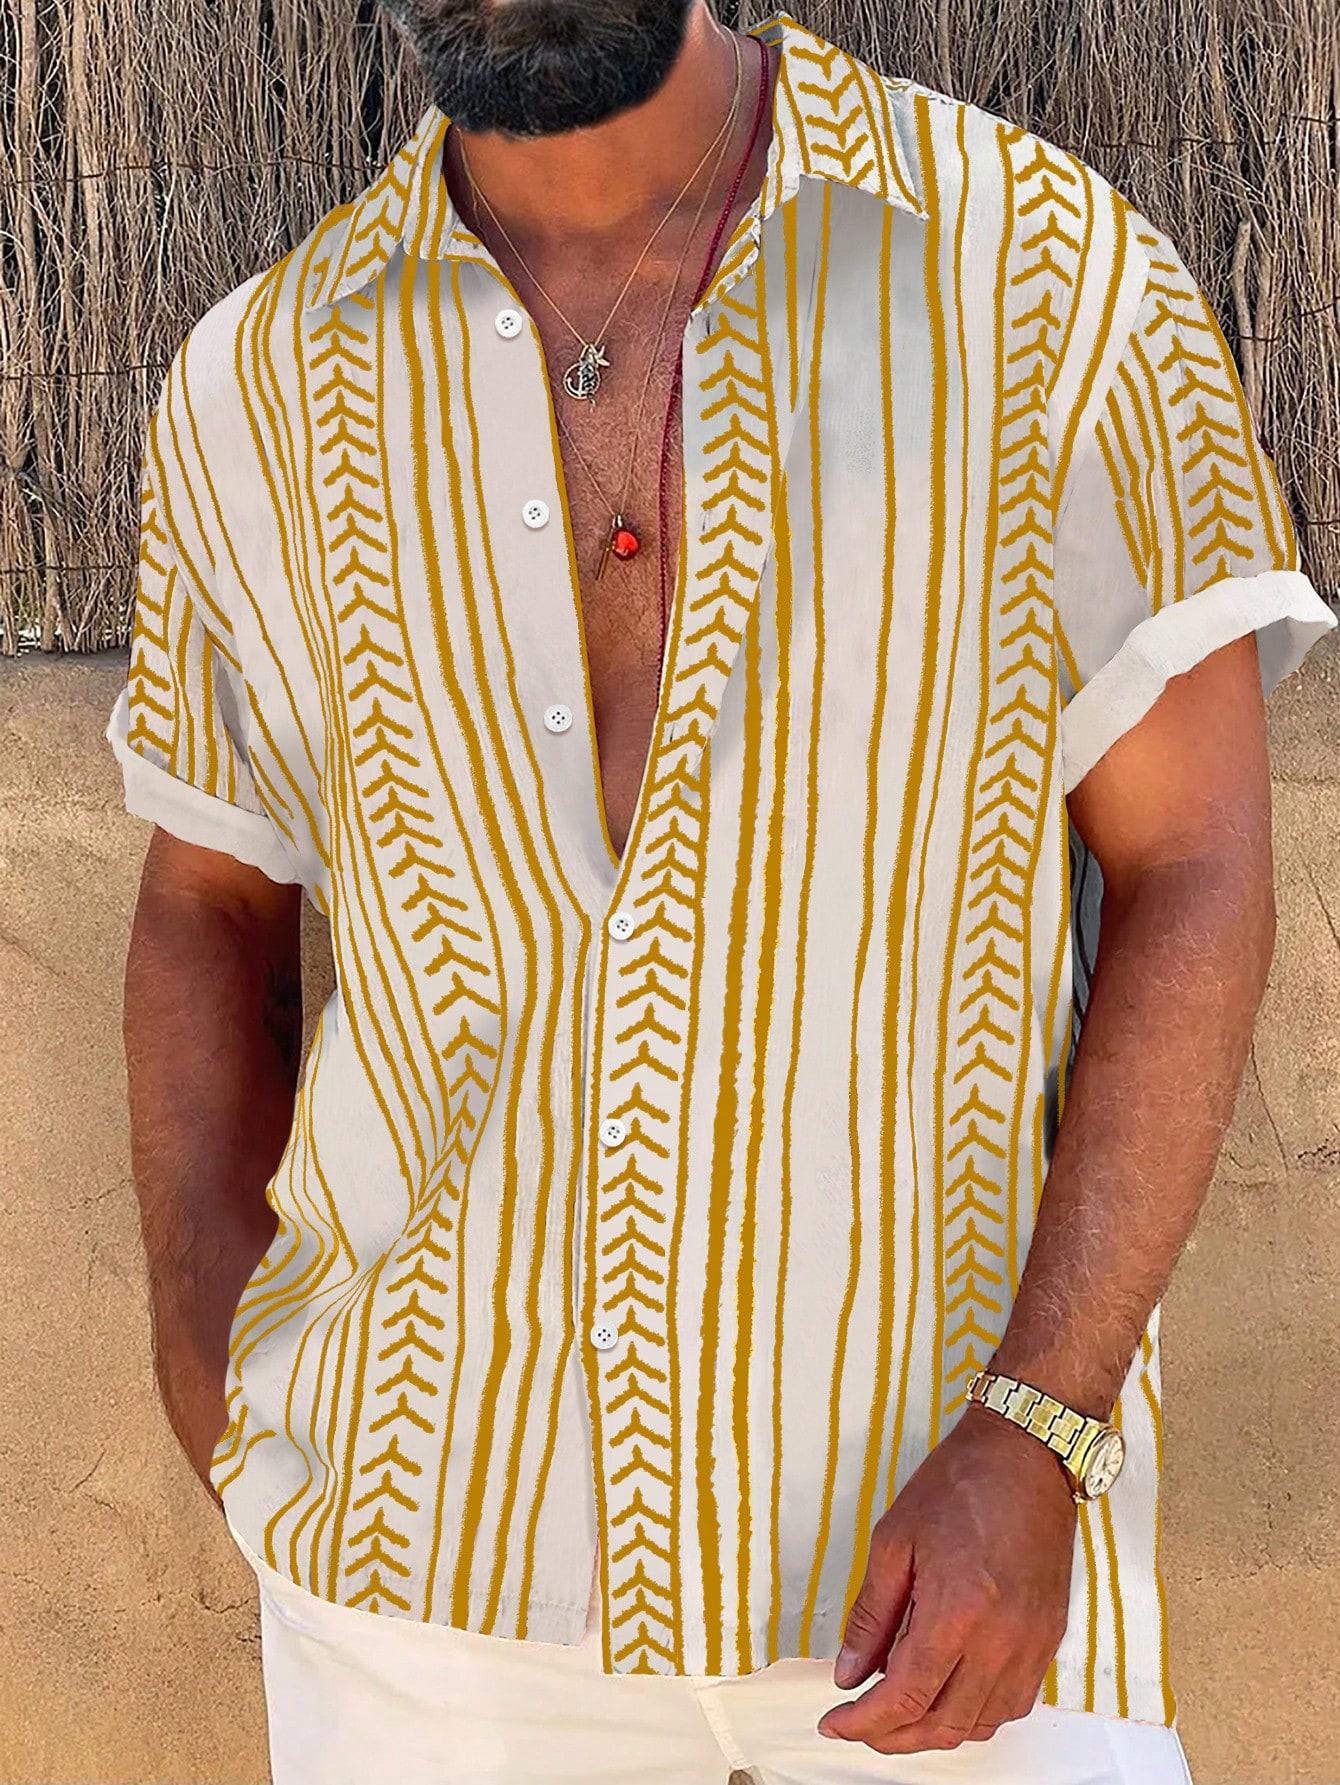 Manfinity RSRT Мужская полосатая рубашка больших размеров с короткими рукавами и пуговицами спереди, желтый